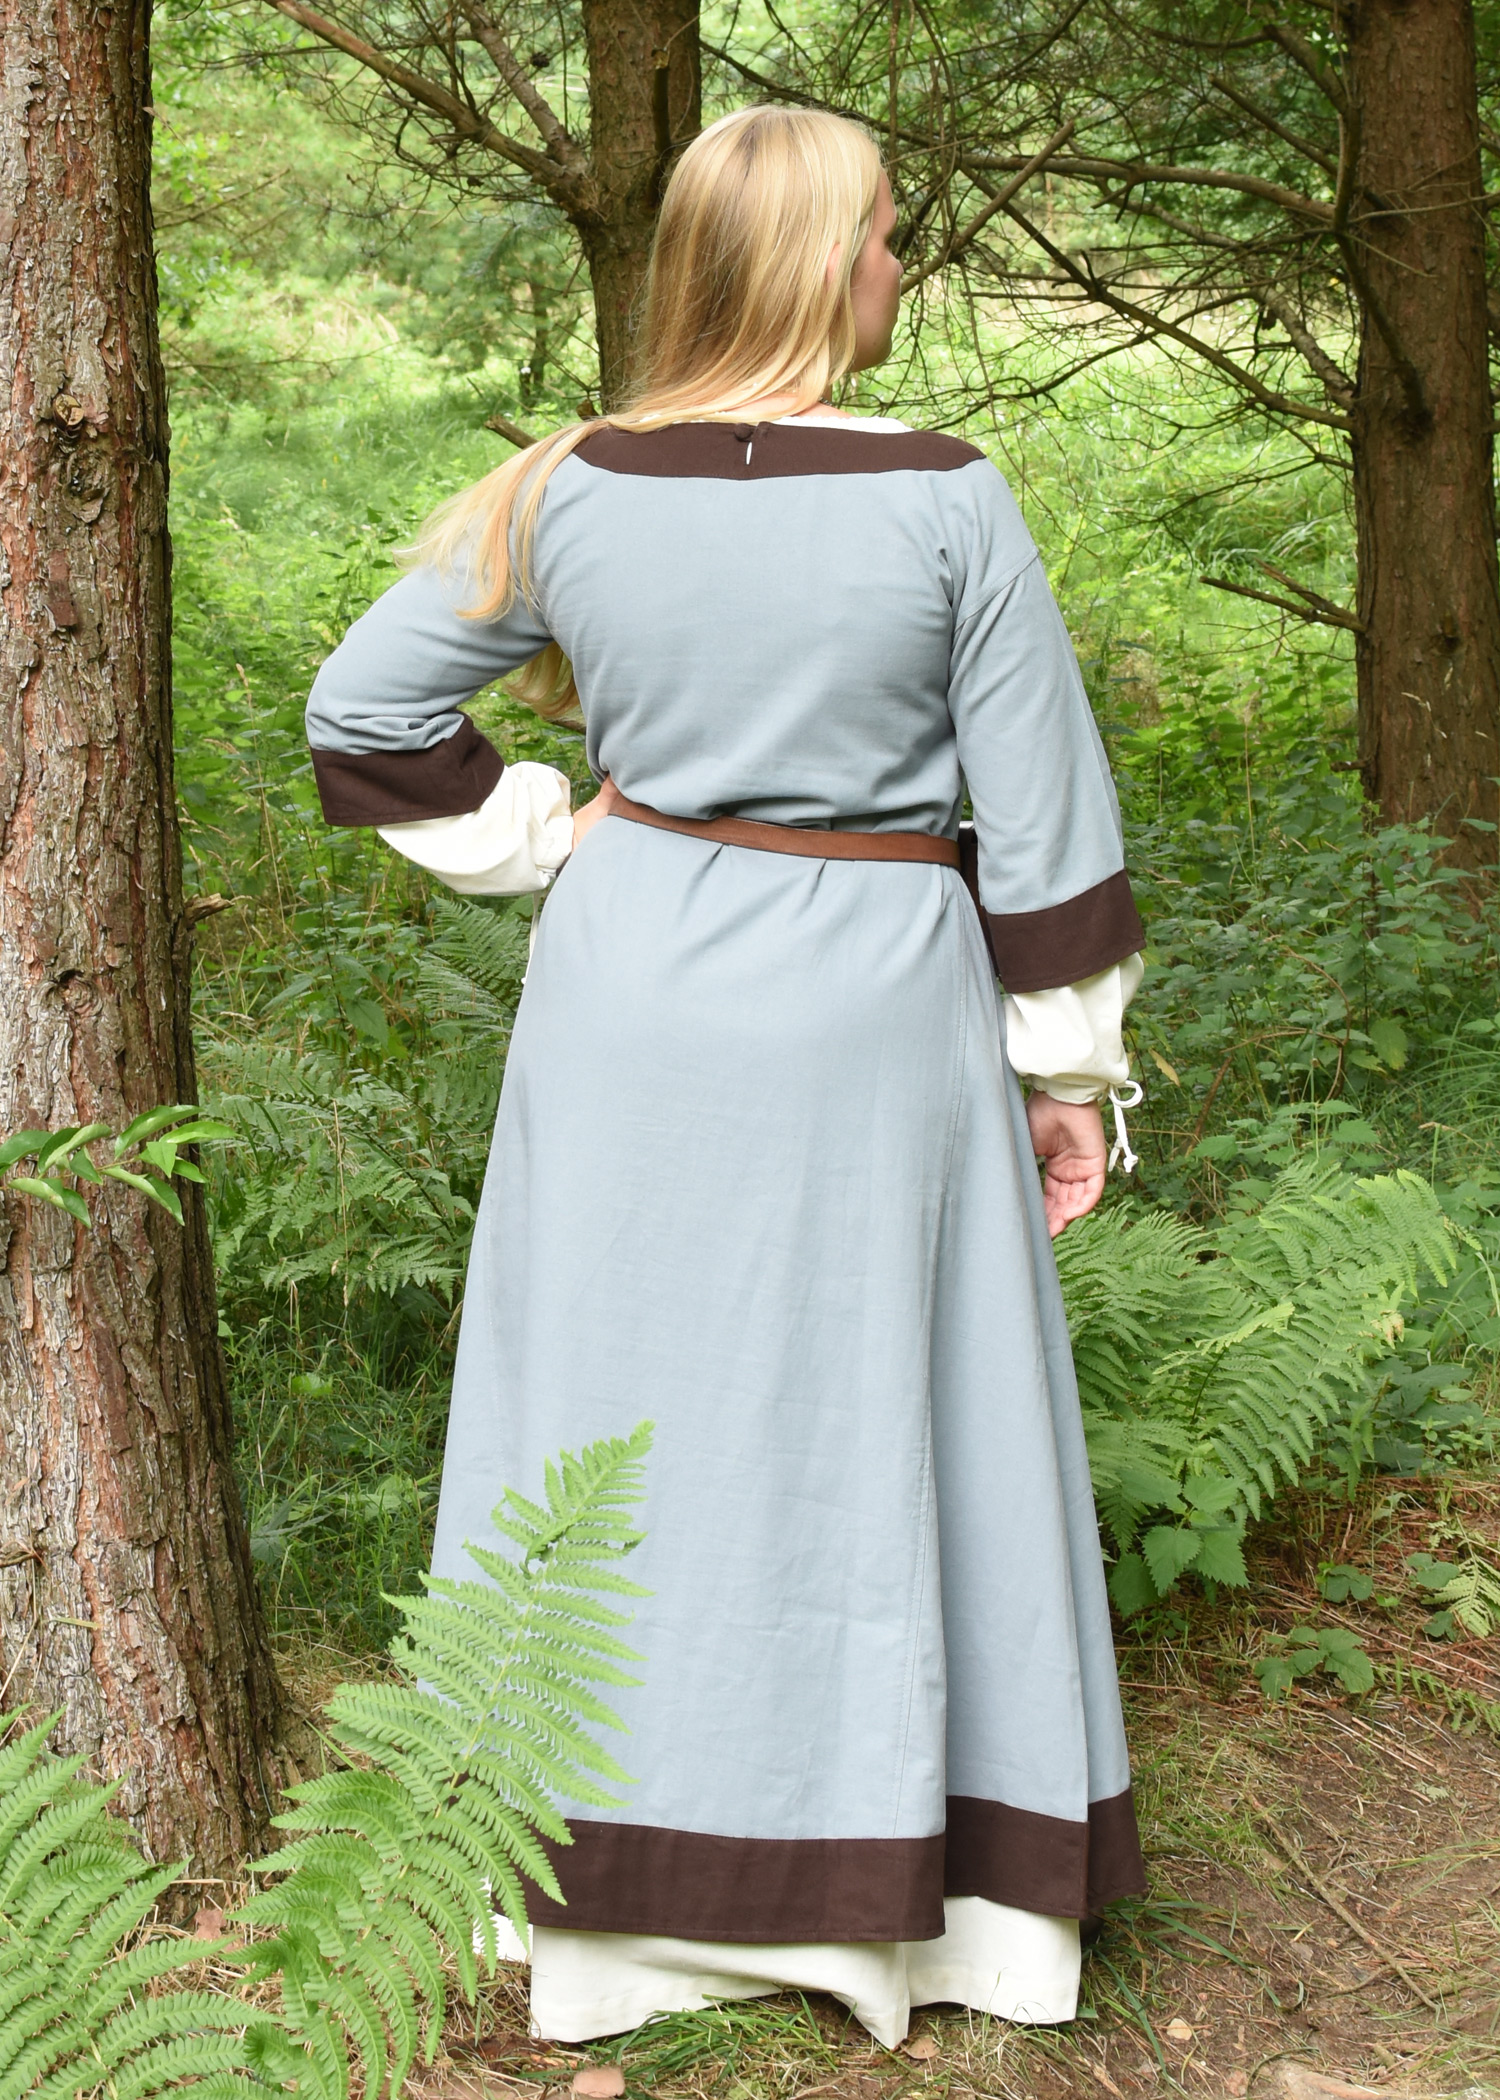 Ella Mittelalter Kleid blau LARP Gewandung Magd Maid Kleidung Frau Kostüm 